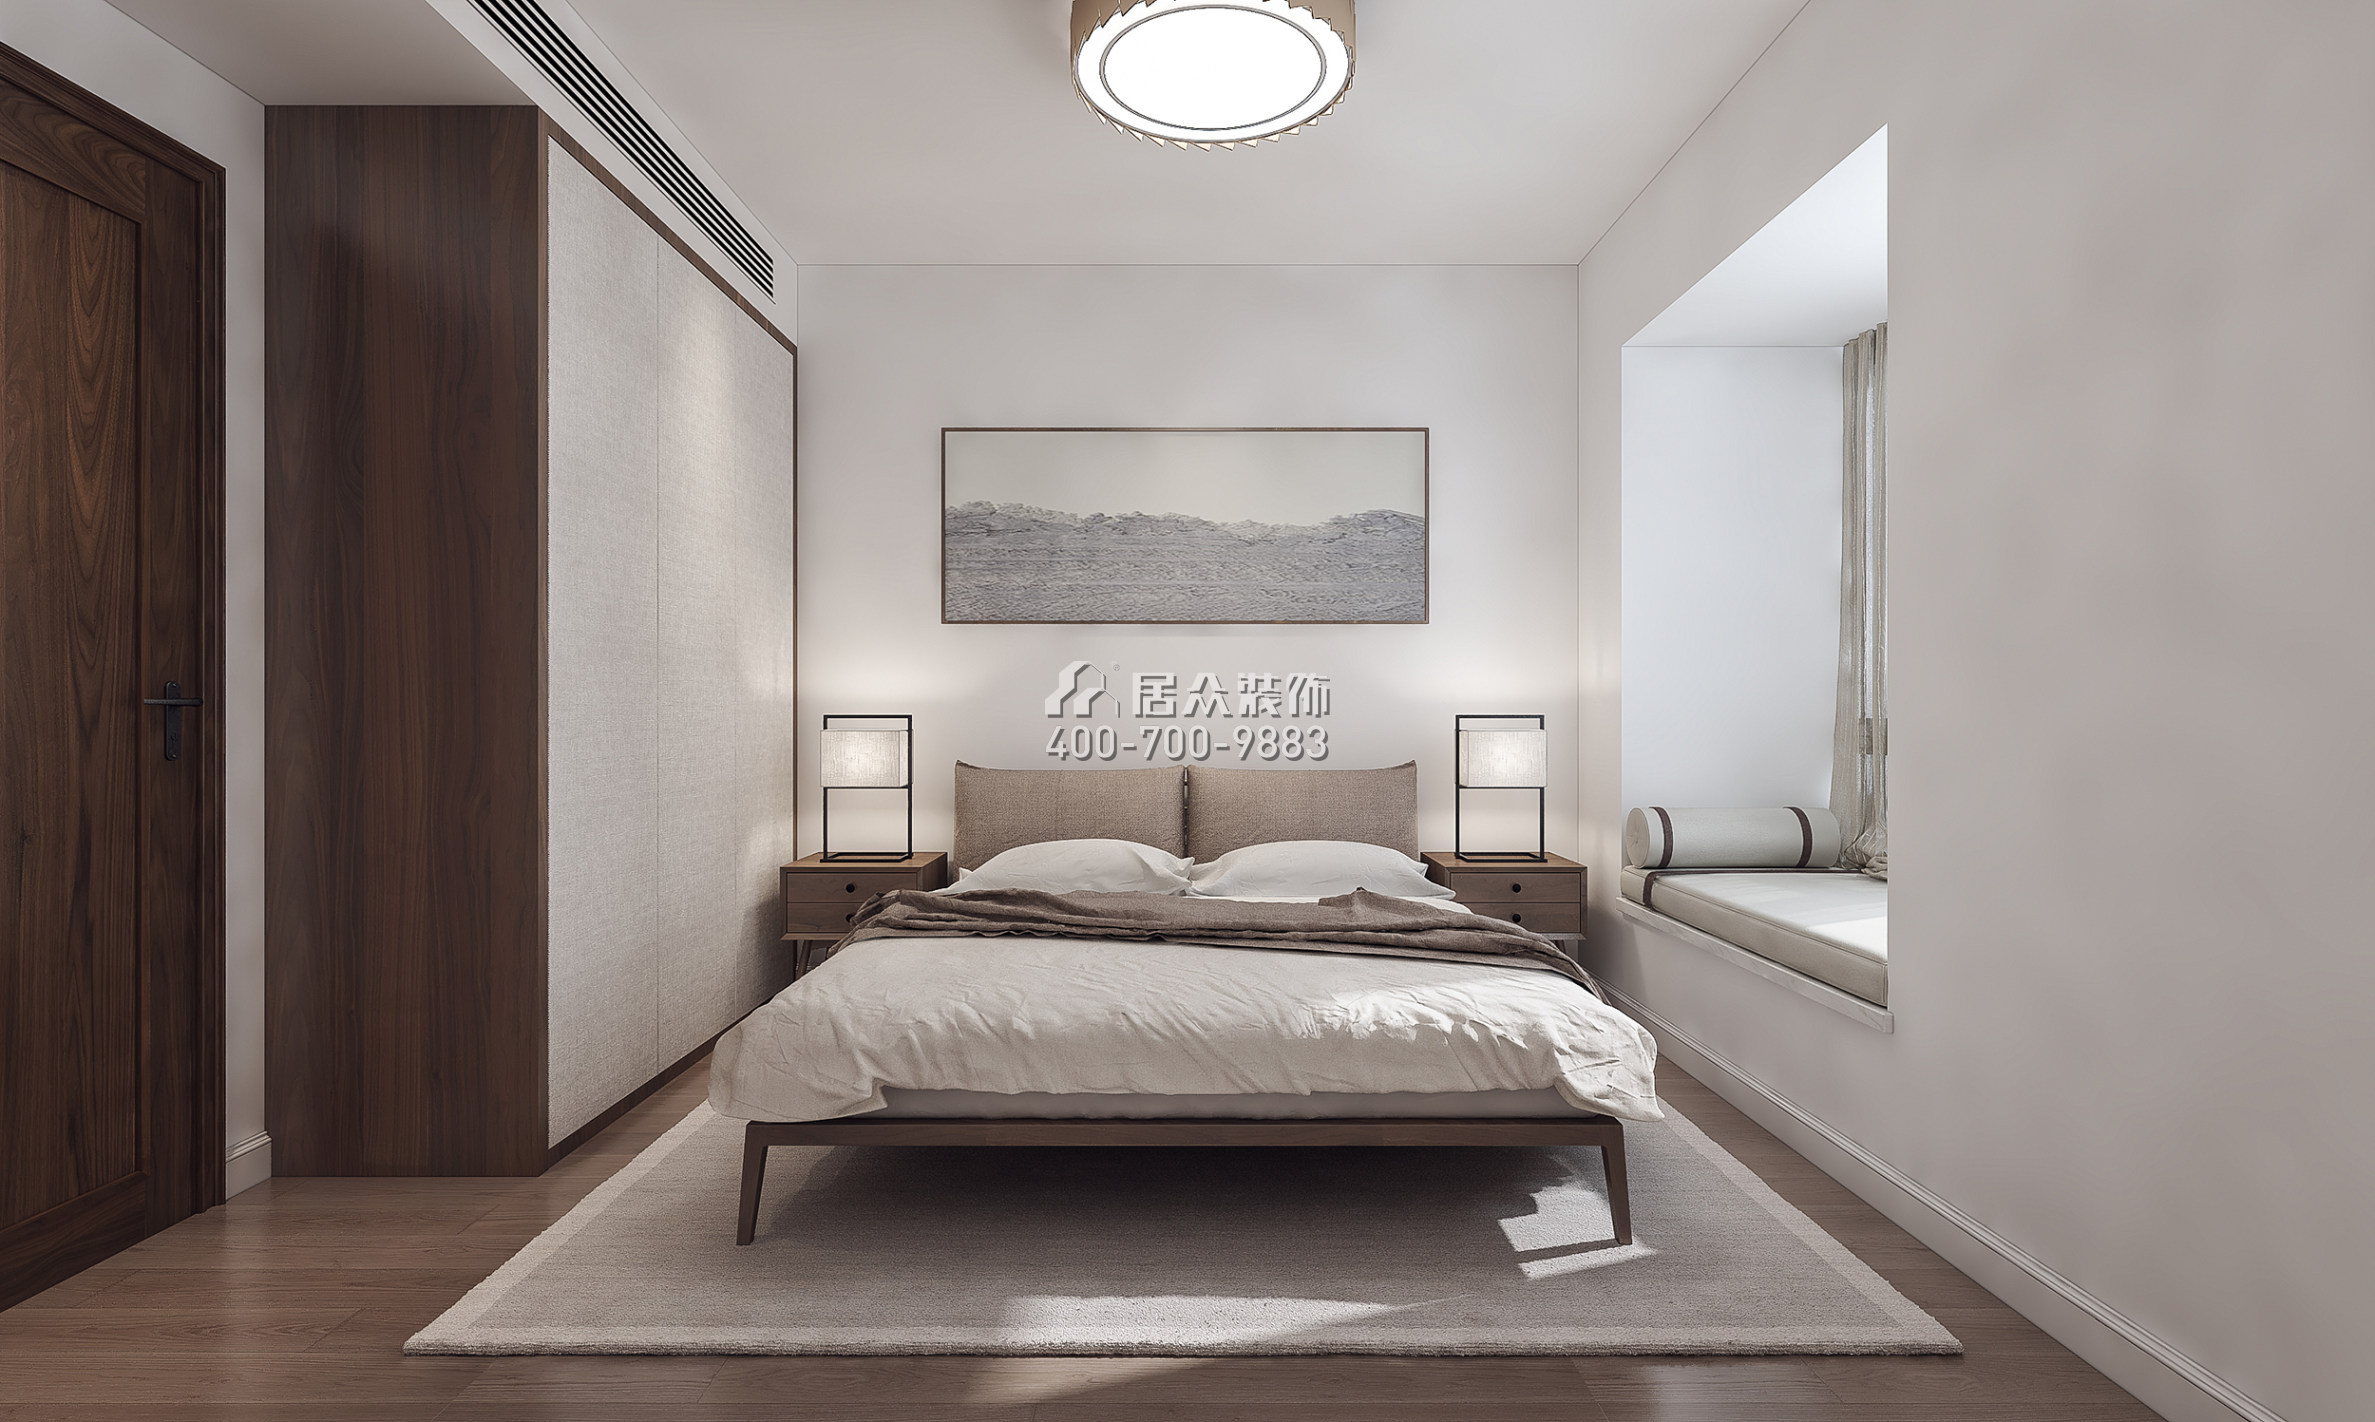 蔚蓝海岸一期118平方米中式风格平层户型卧室装修效果图